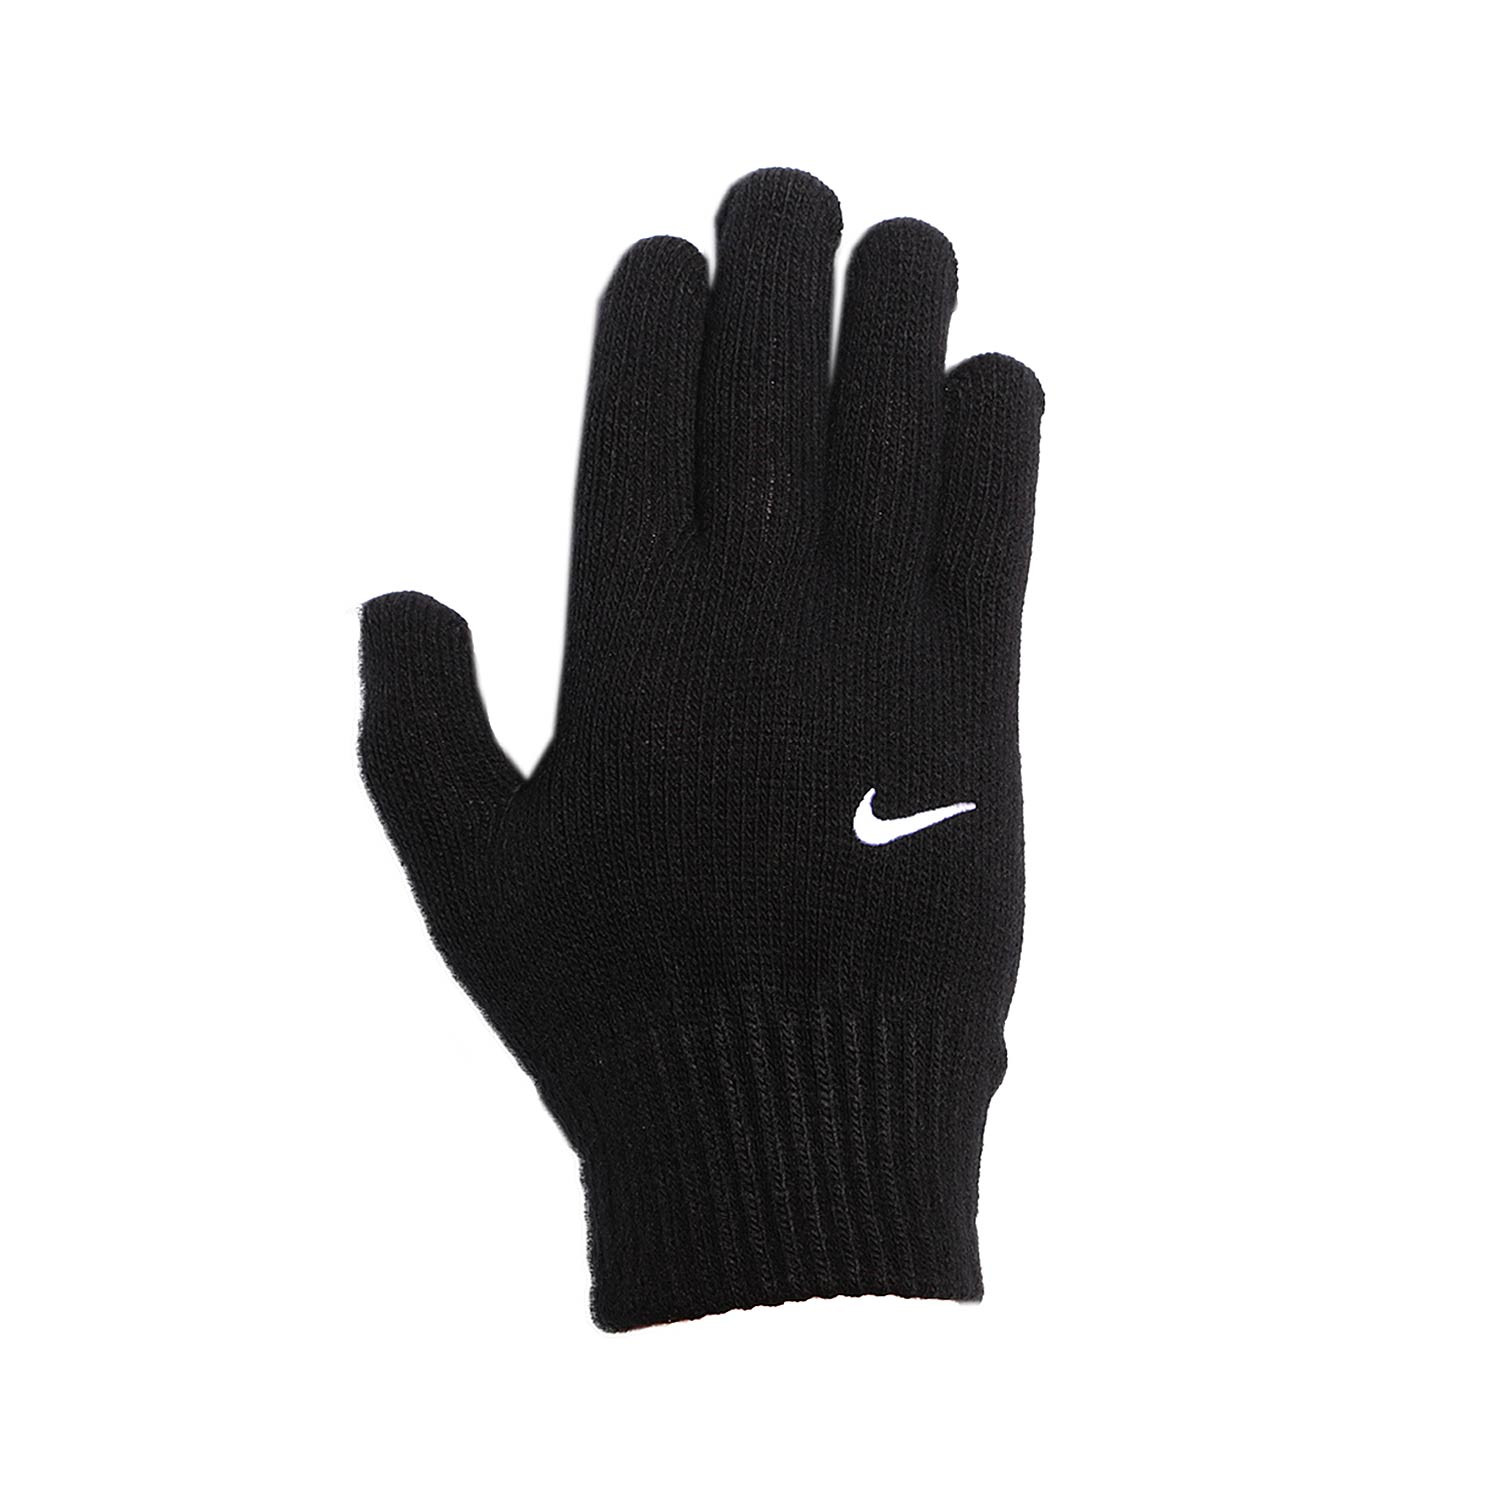 Nike Knit 2.0 negros | futbolmania